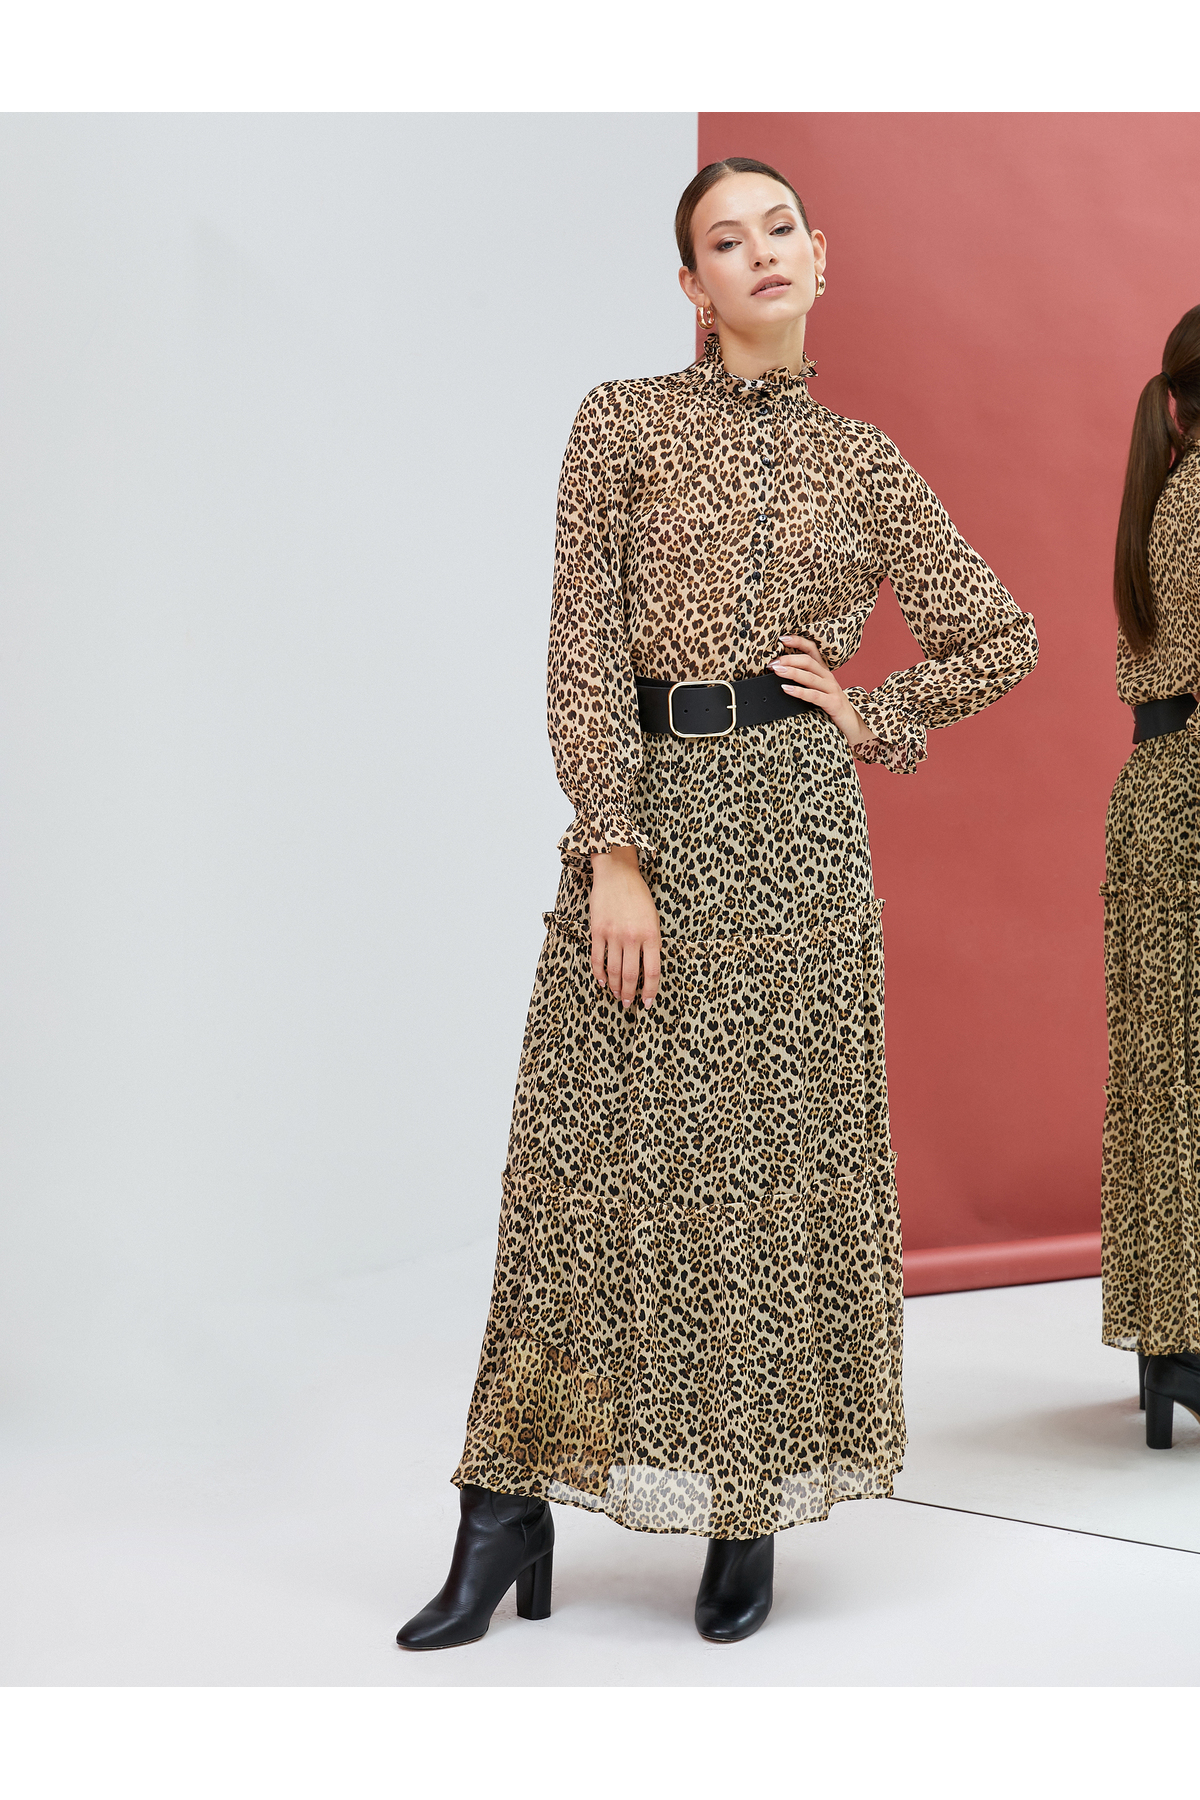 Koton Maxi Chiffon Skirt Leopard Patterned Ruffles Lined.